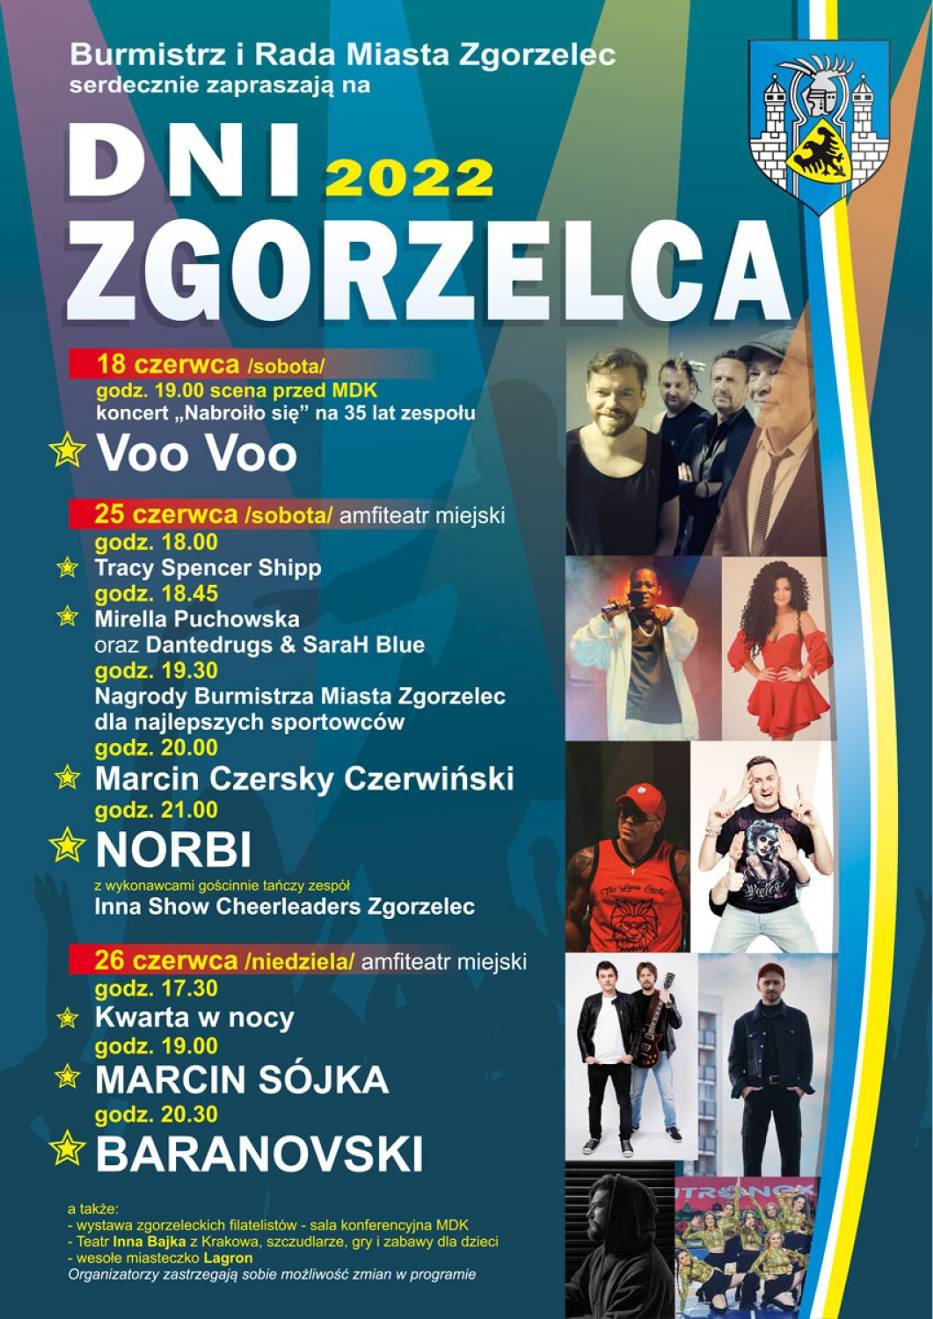 Koncert Voo Voo 18 czerwca w Zgorzelcu